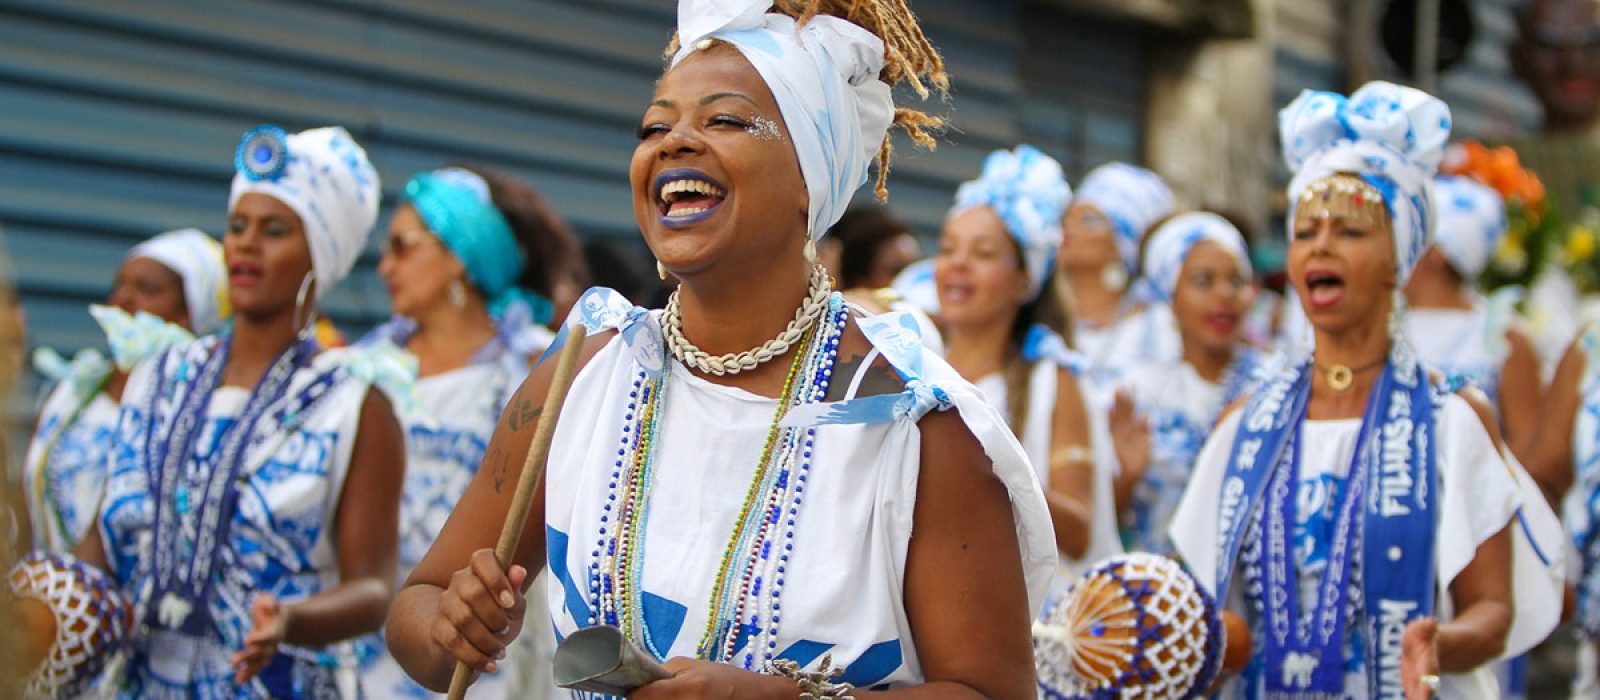 Carnaval Bahia 2020